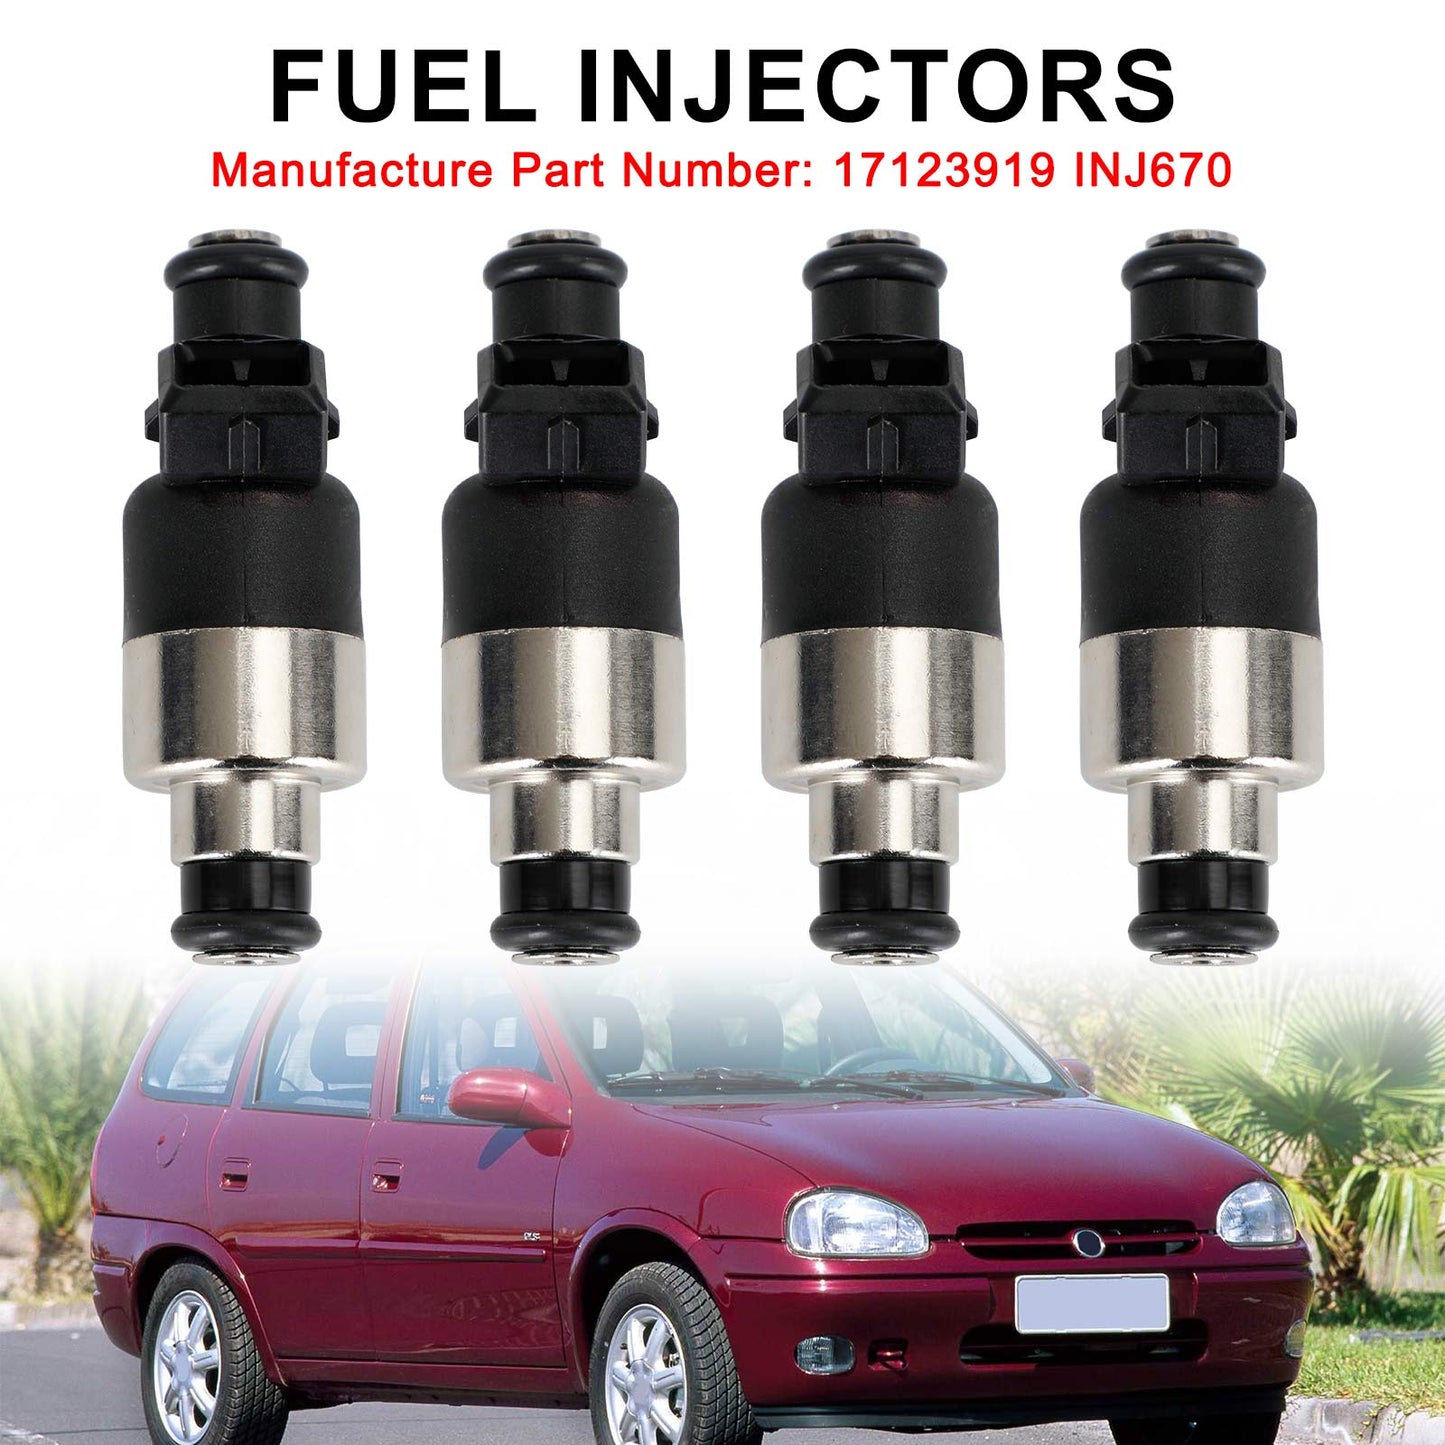 4PCS Fuel Injector 17123919 Fit Chevrolet Corsa 1996-1998 INJ670